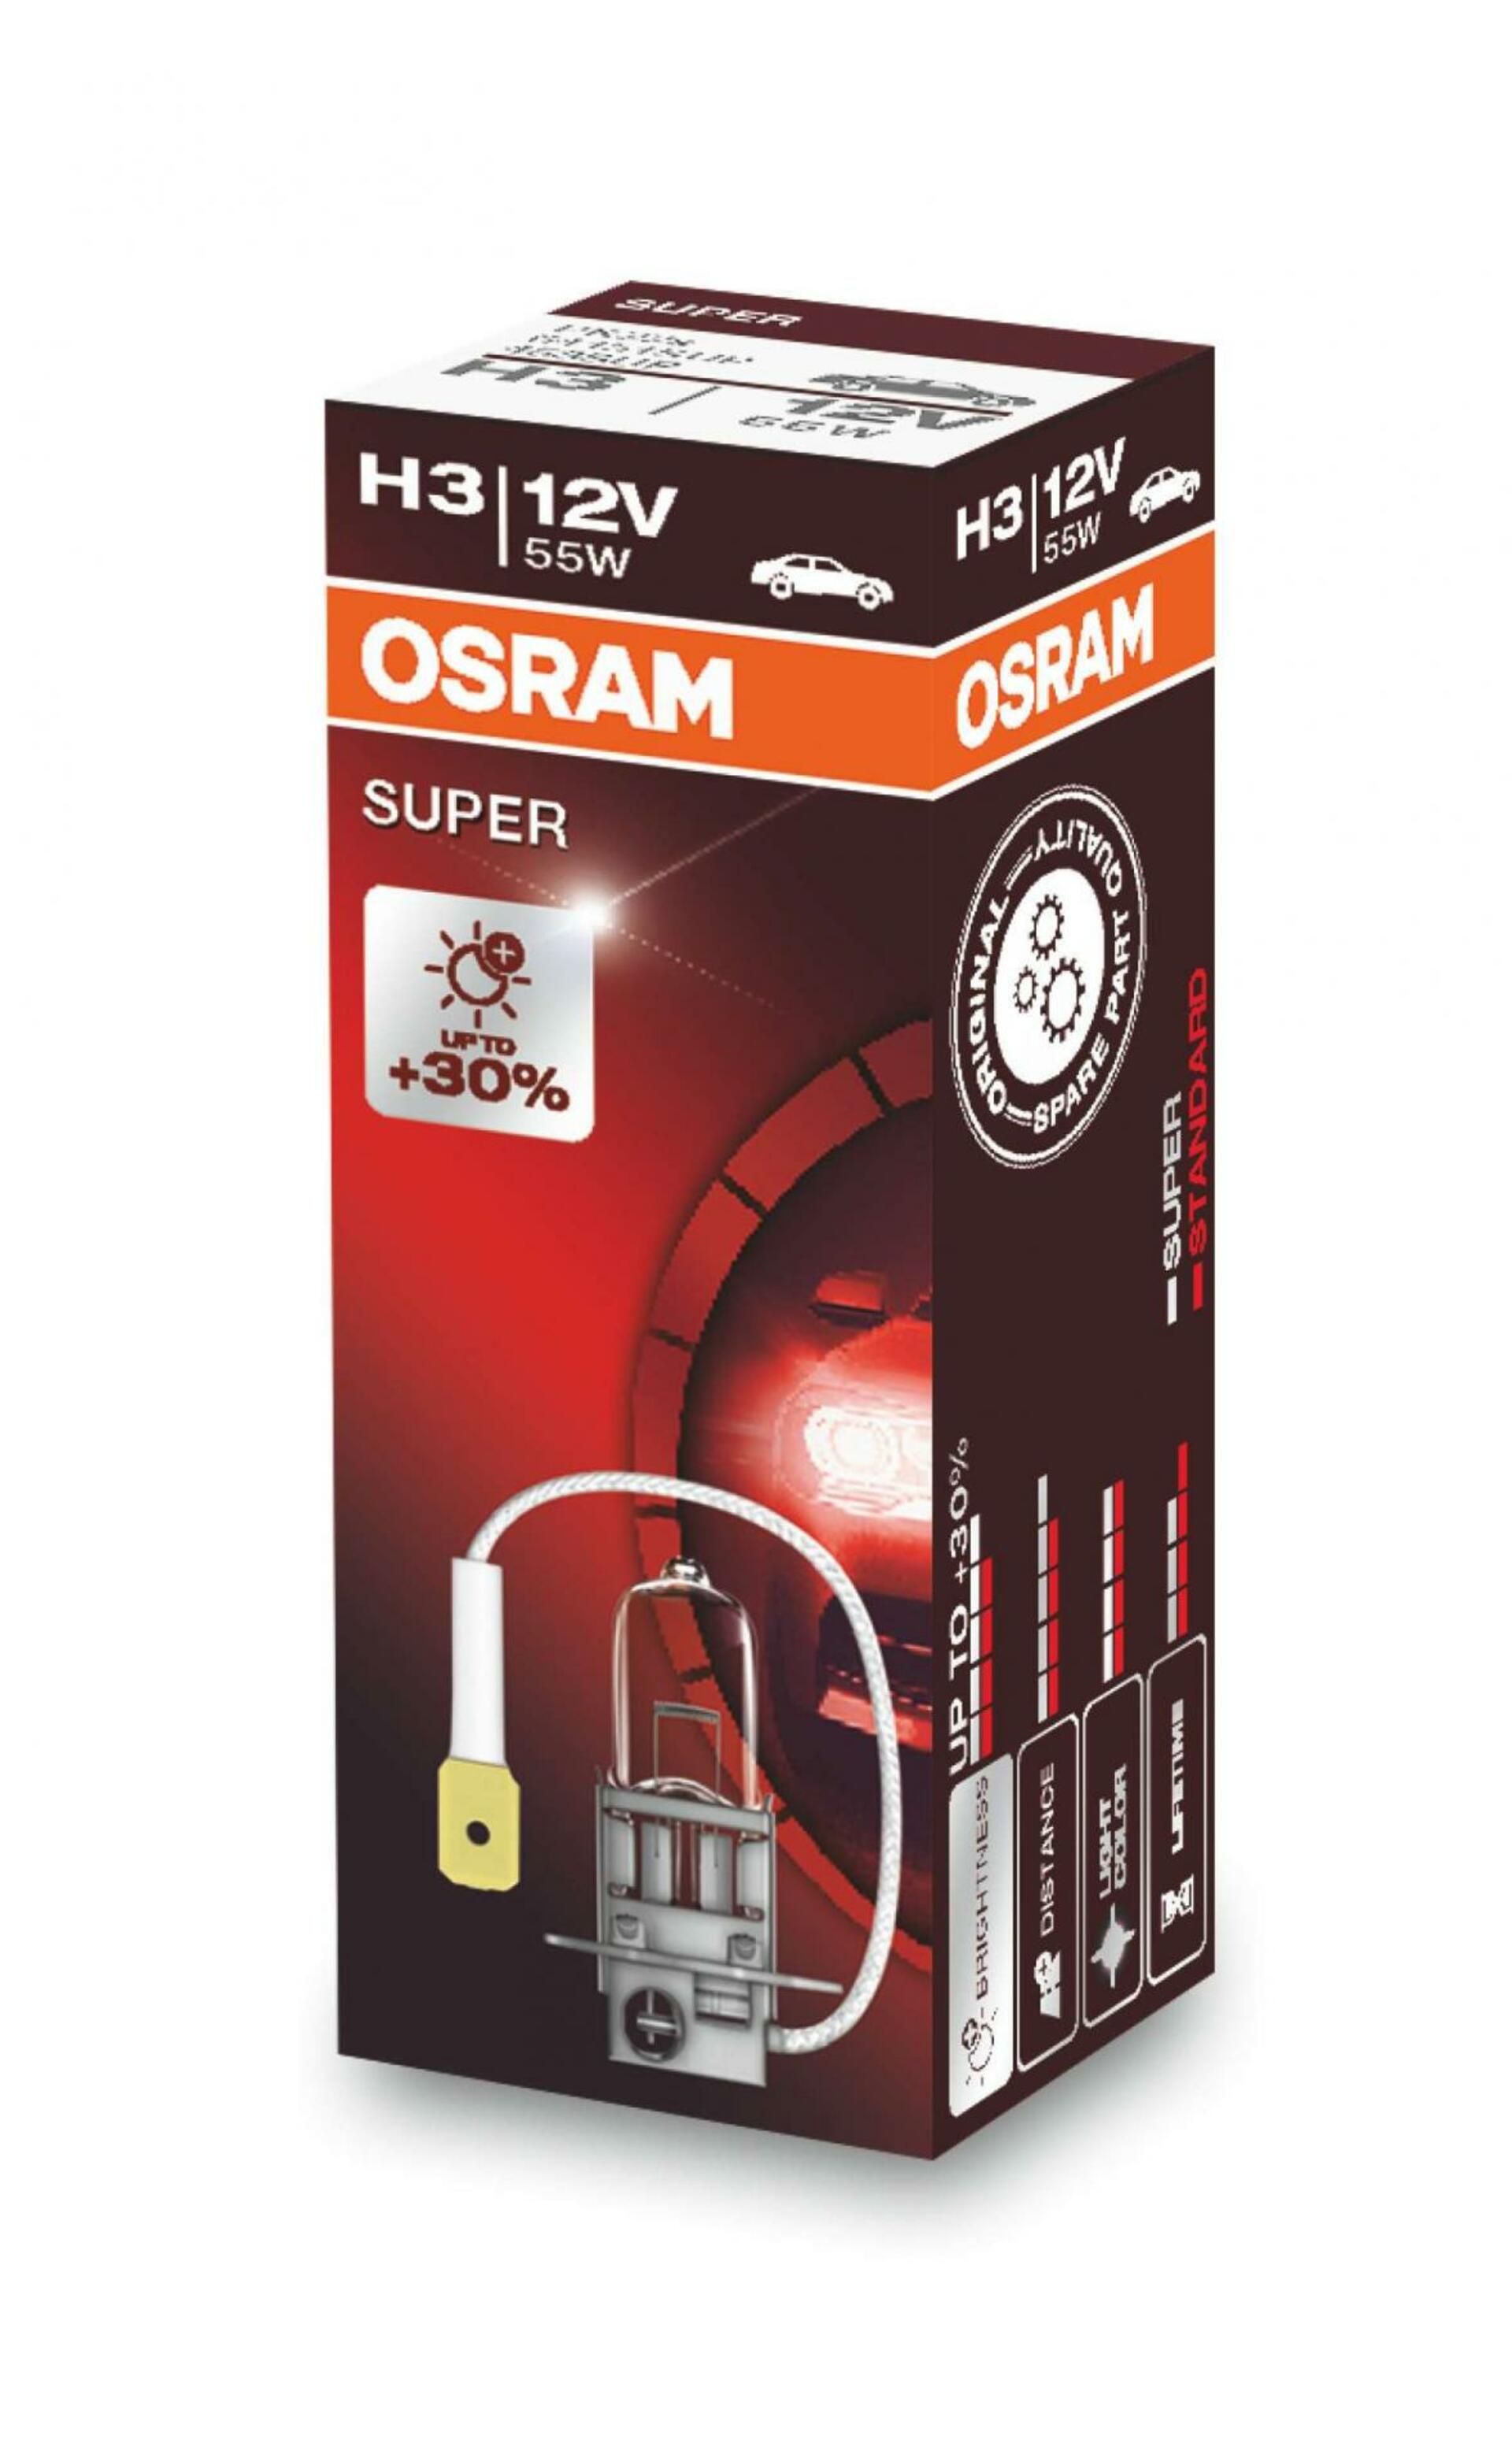 OSRAM H3 64151SUP SUPER +30% 55W 12V PK22s